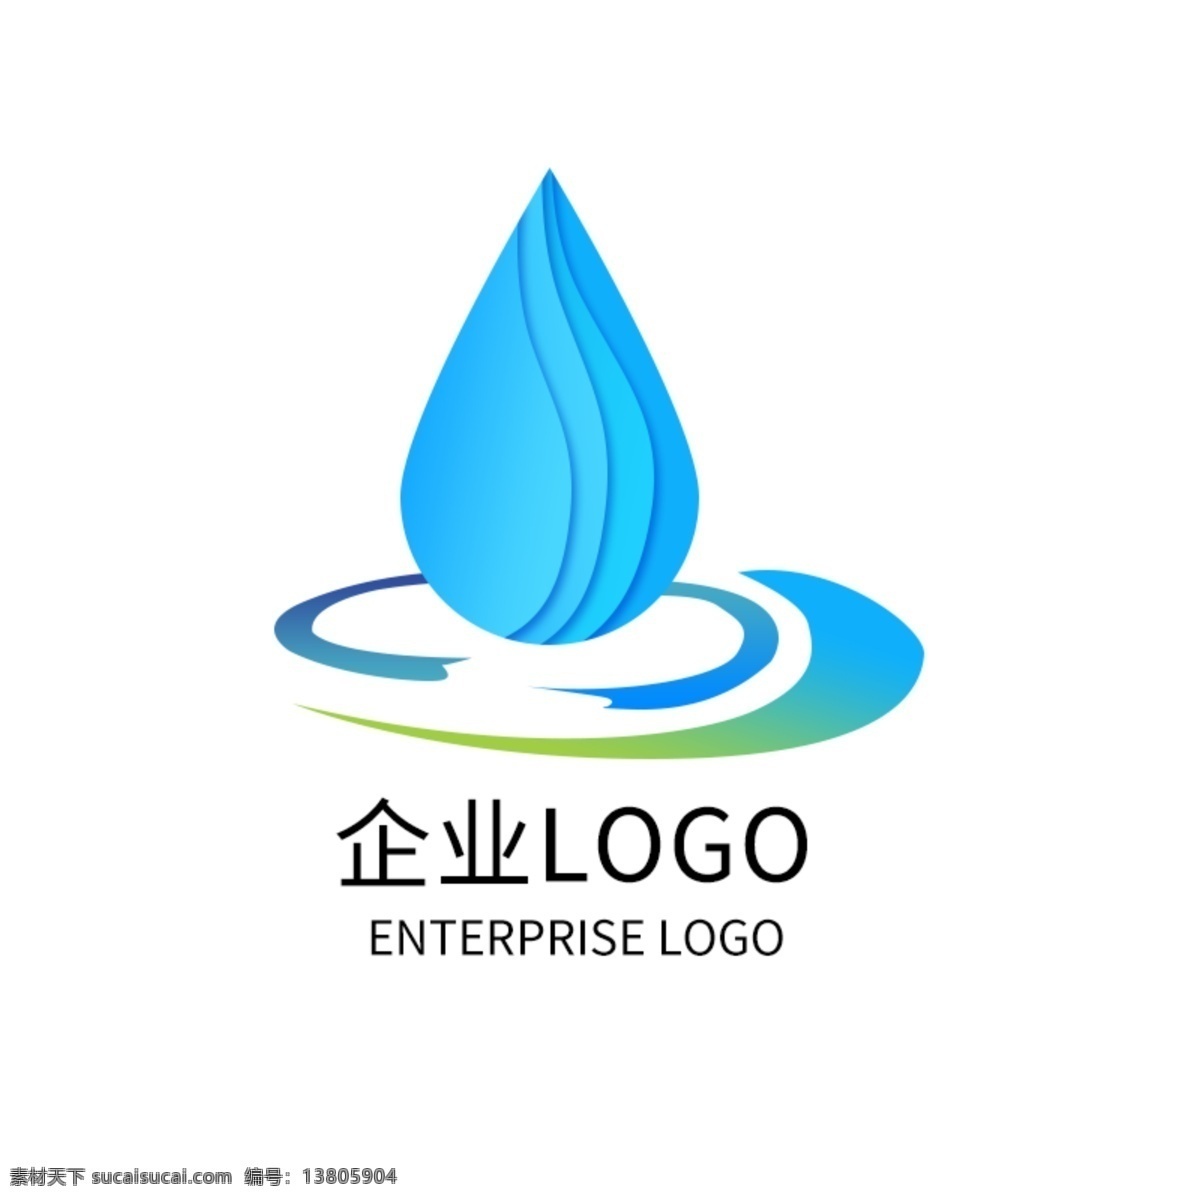 饮水 公司 矿泉水 logo 企业 标志 导演 水滴 logo设计 水产 公司logo